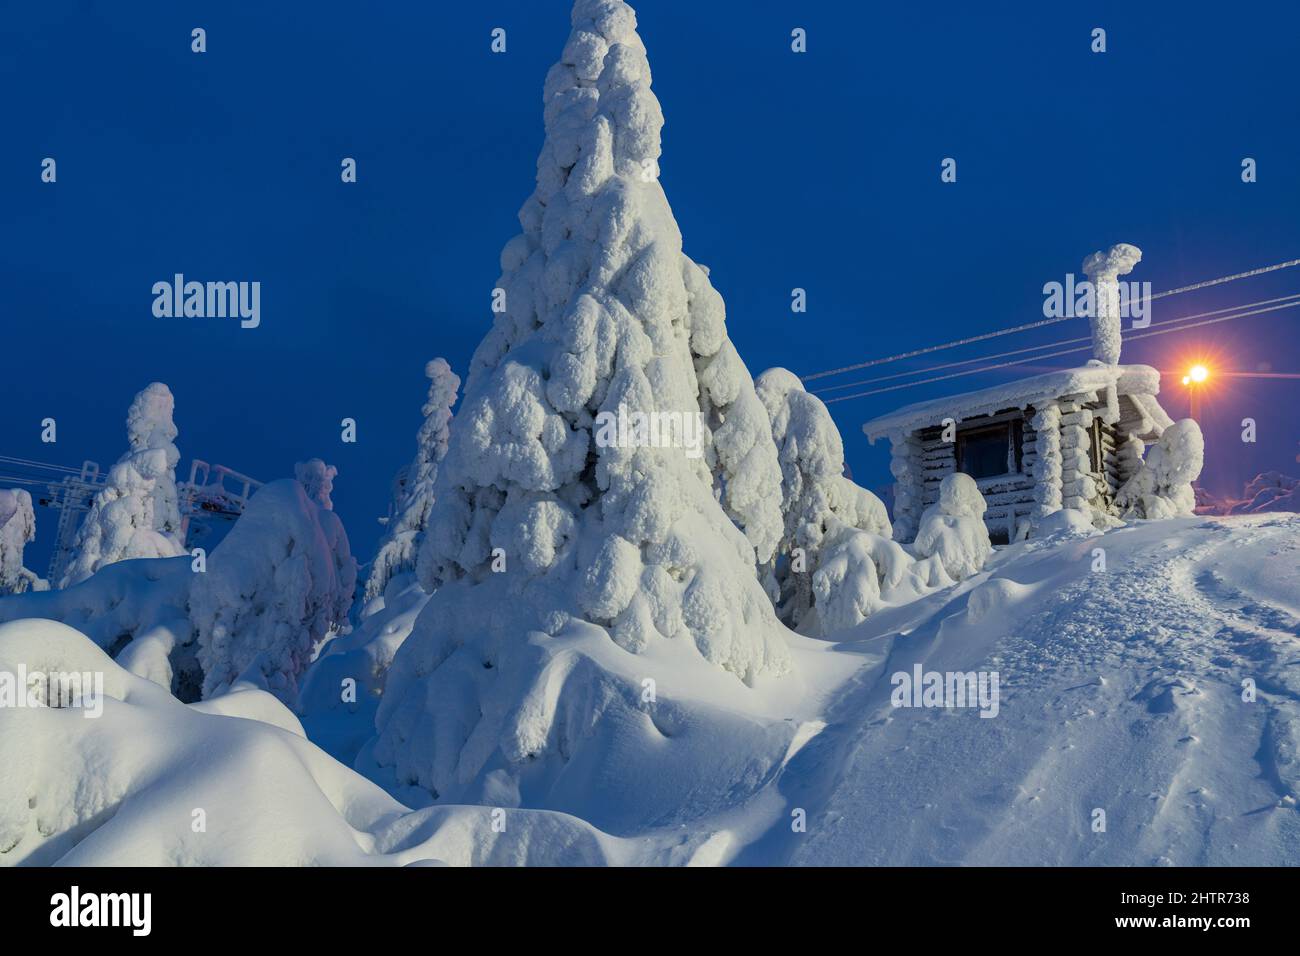 Cabaña de madera y abetos cubiertos de nieve en el paisaje congelado de la estación de esquí de ISO-Syote, Laponia, Finlandia Foto de stock